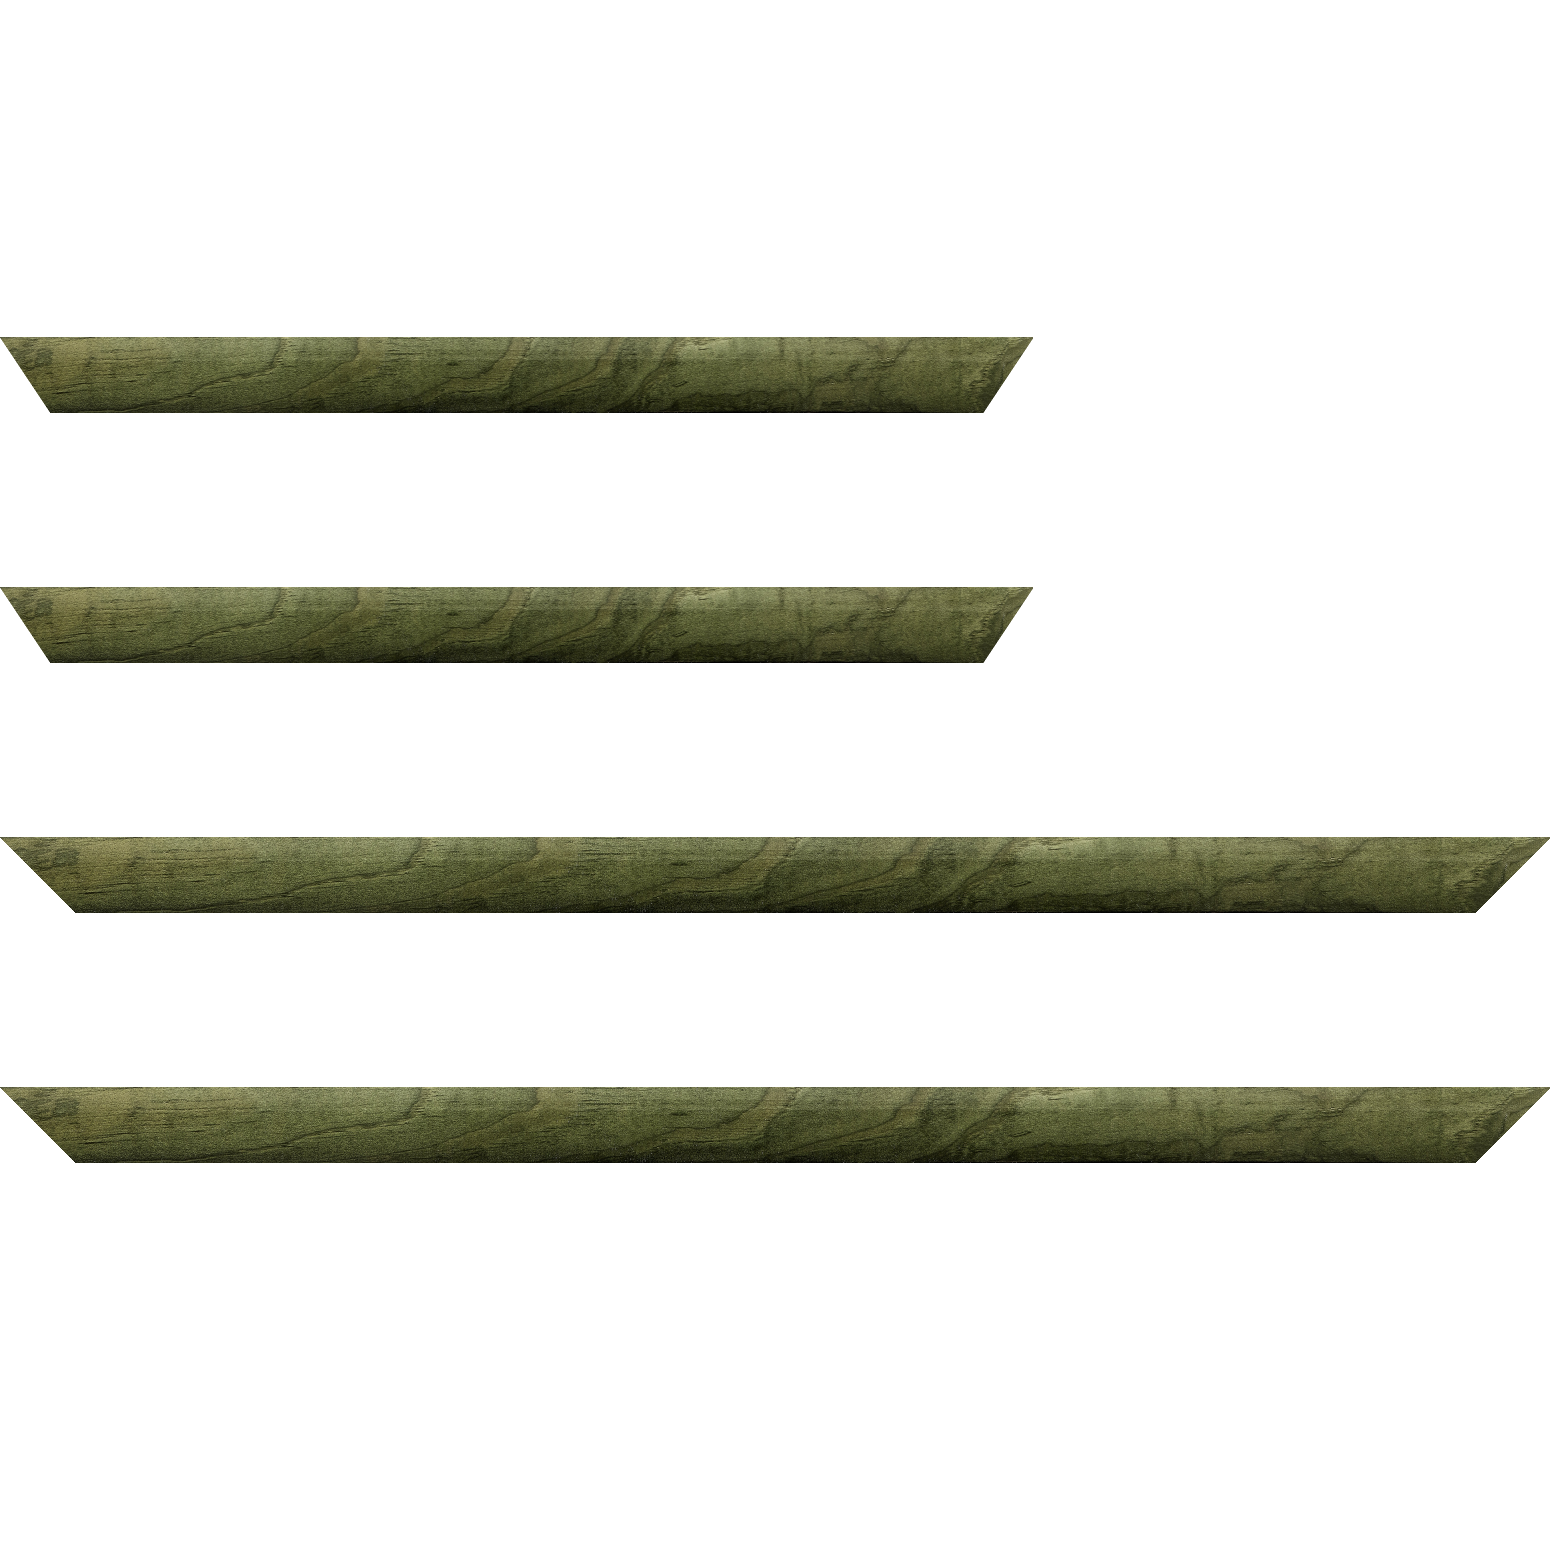 Baguette bois profil arrondi en pente plongeant largeur 2.4cm couleur vert sapin finition vernis brillant,veine du bois  apparent (pin) , - 59.4x84.1